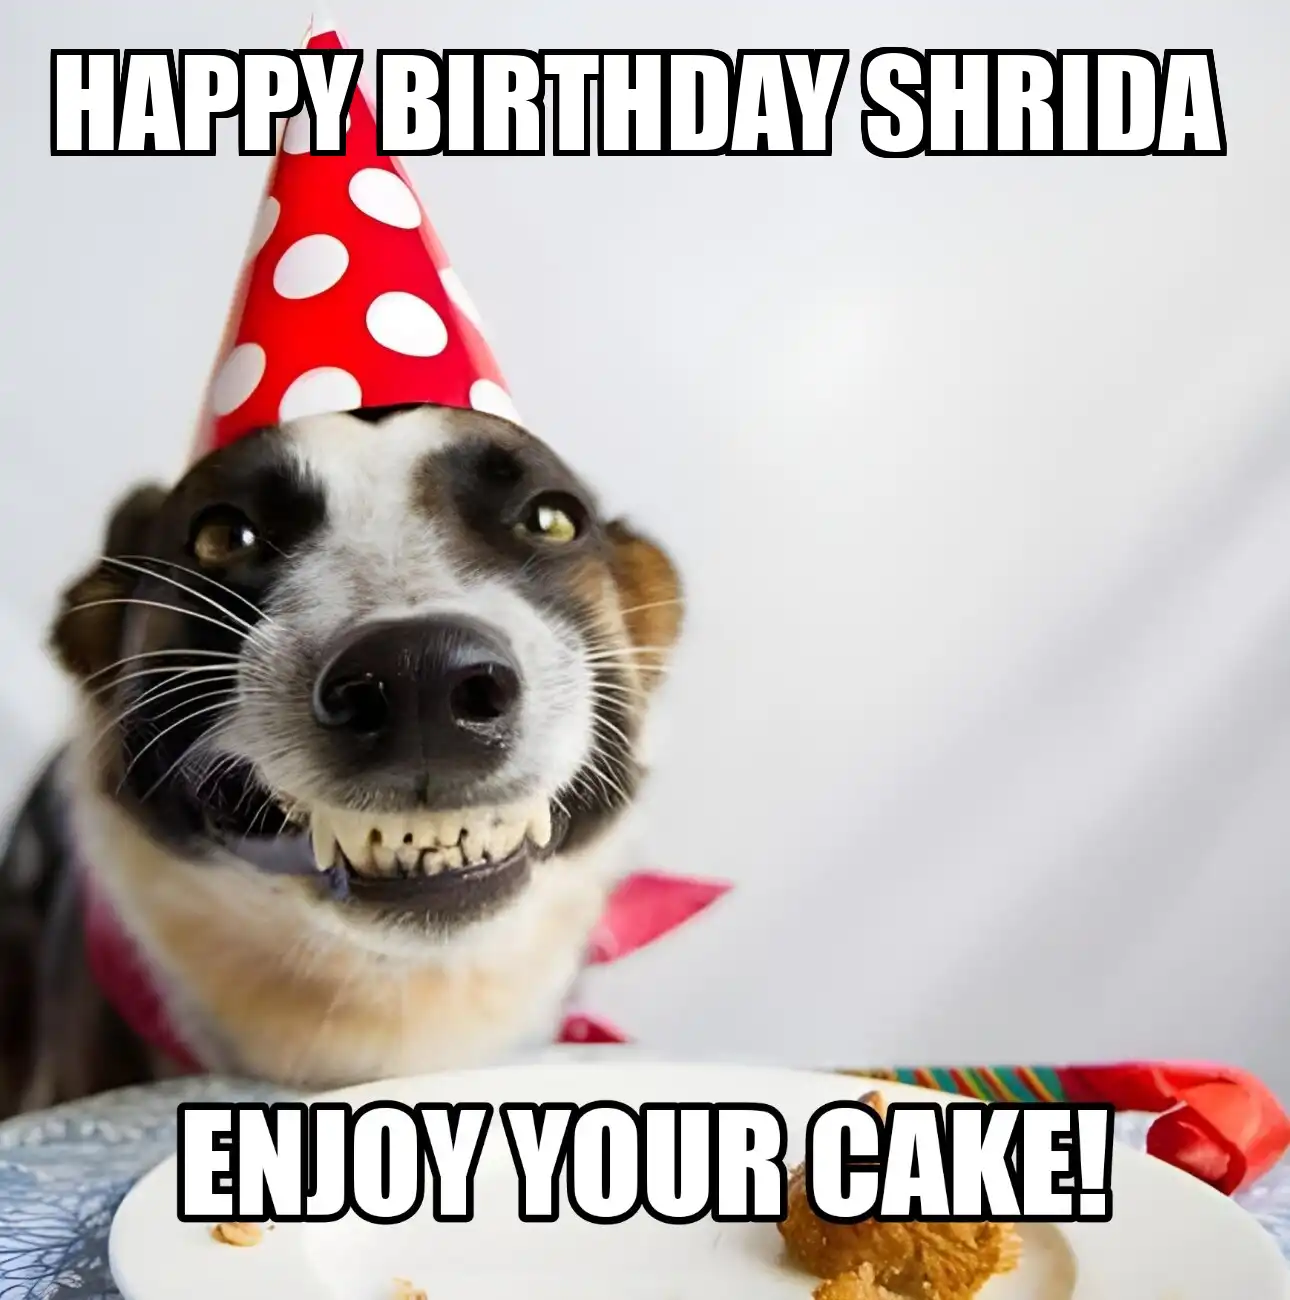 Happy Birthday Shrida Enjoy Your Cake Dog Meme